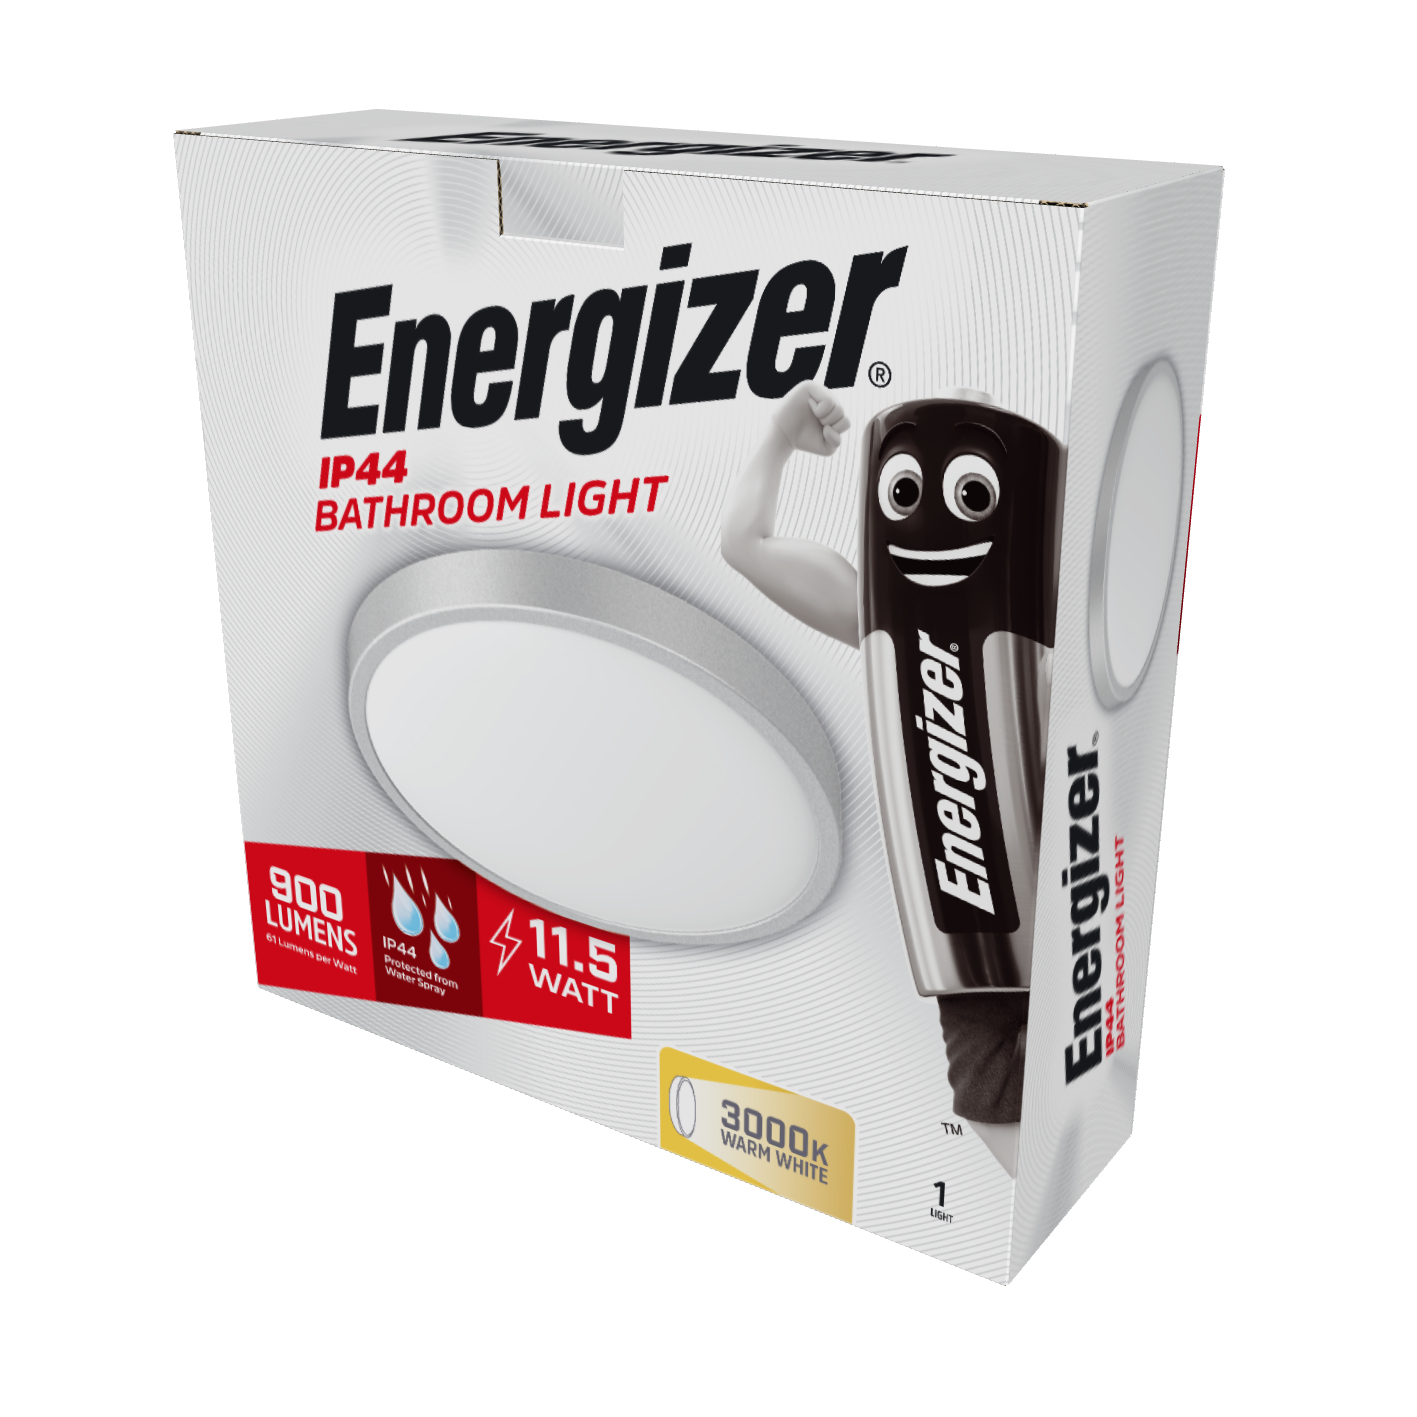 Energizer LED-Badezimmerleuchte, 250 mm, 11,5 W, 900 Lumen, 3.000 K (Warmweiß)